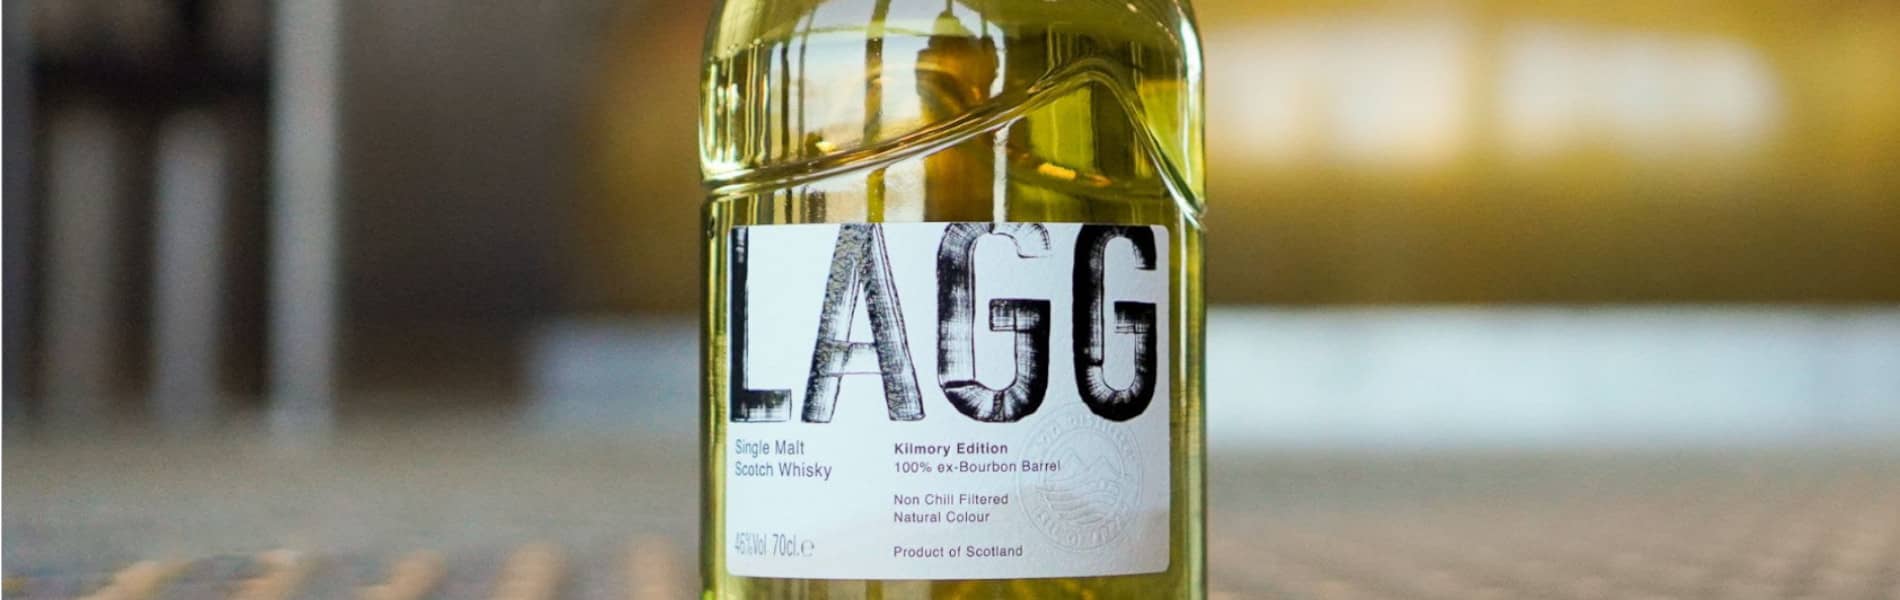 Kilmory le premier whisky permanent de la distillerie Lagg